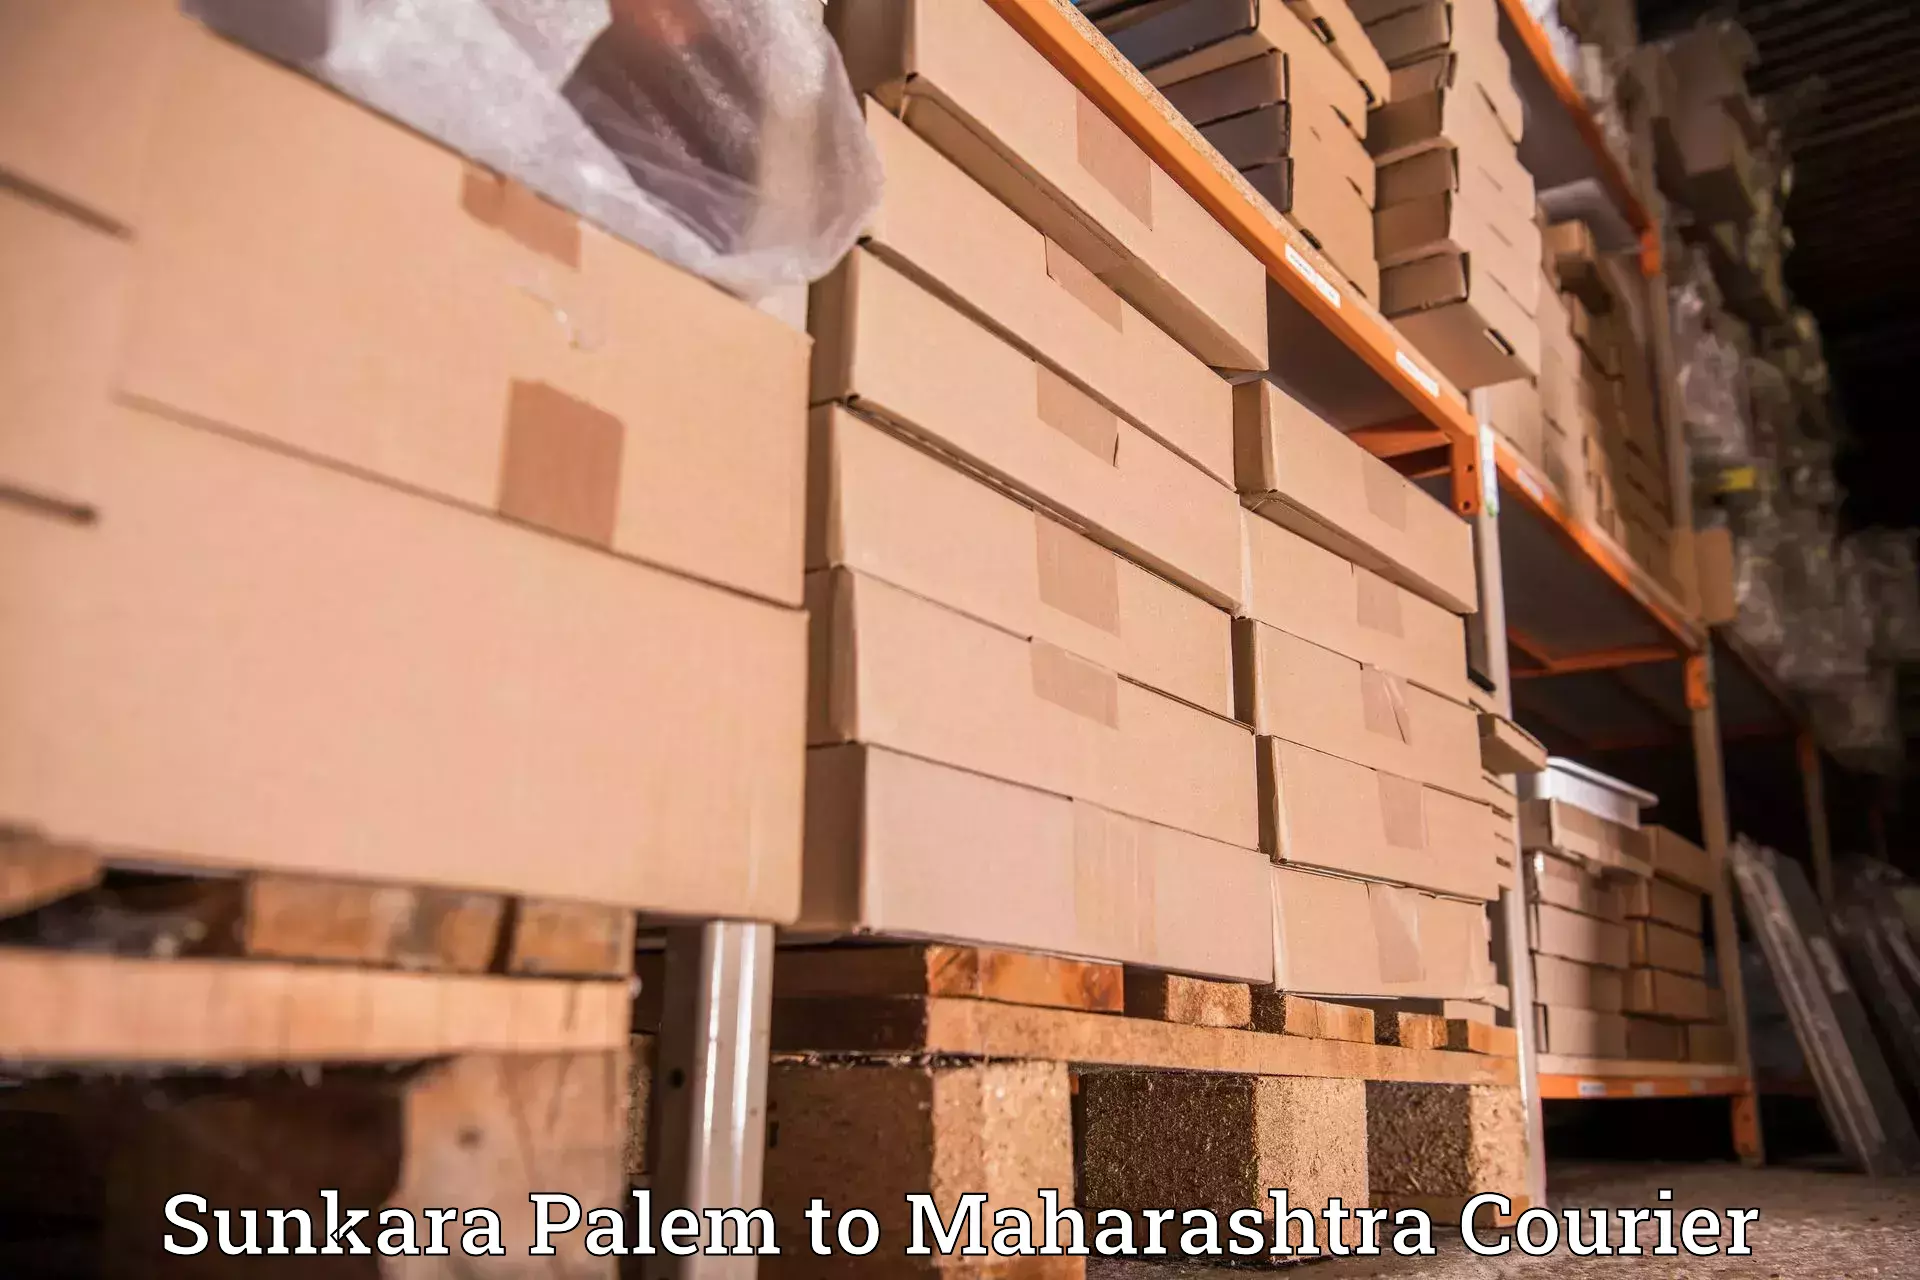 High value parcel delivery Sunkara Palem to Sindhudurg